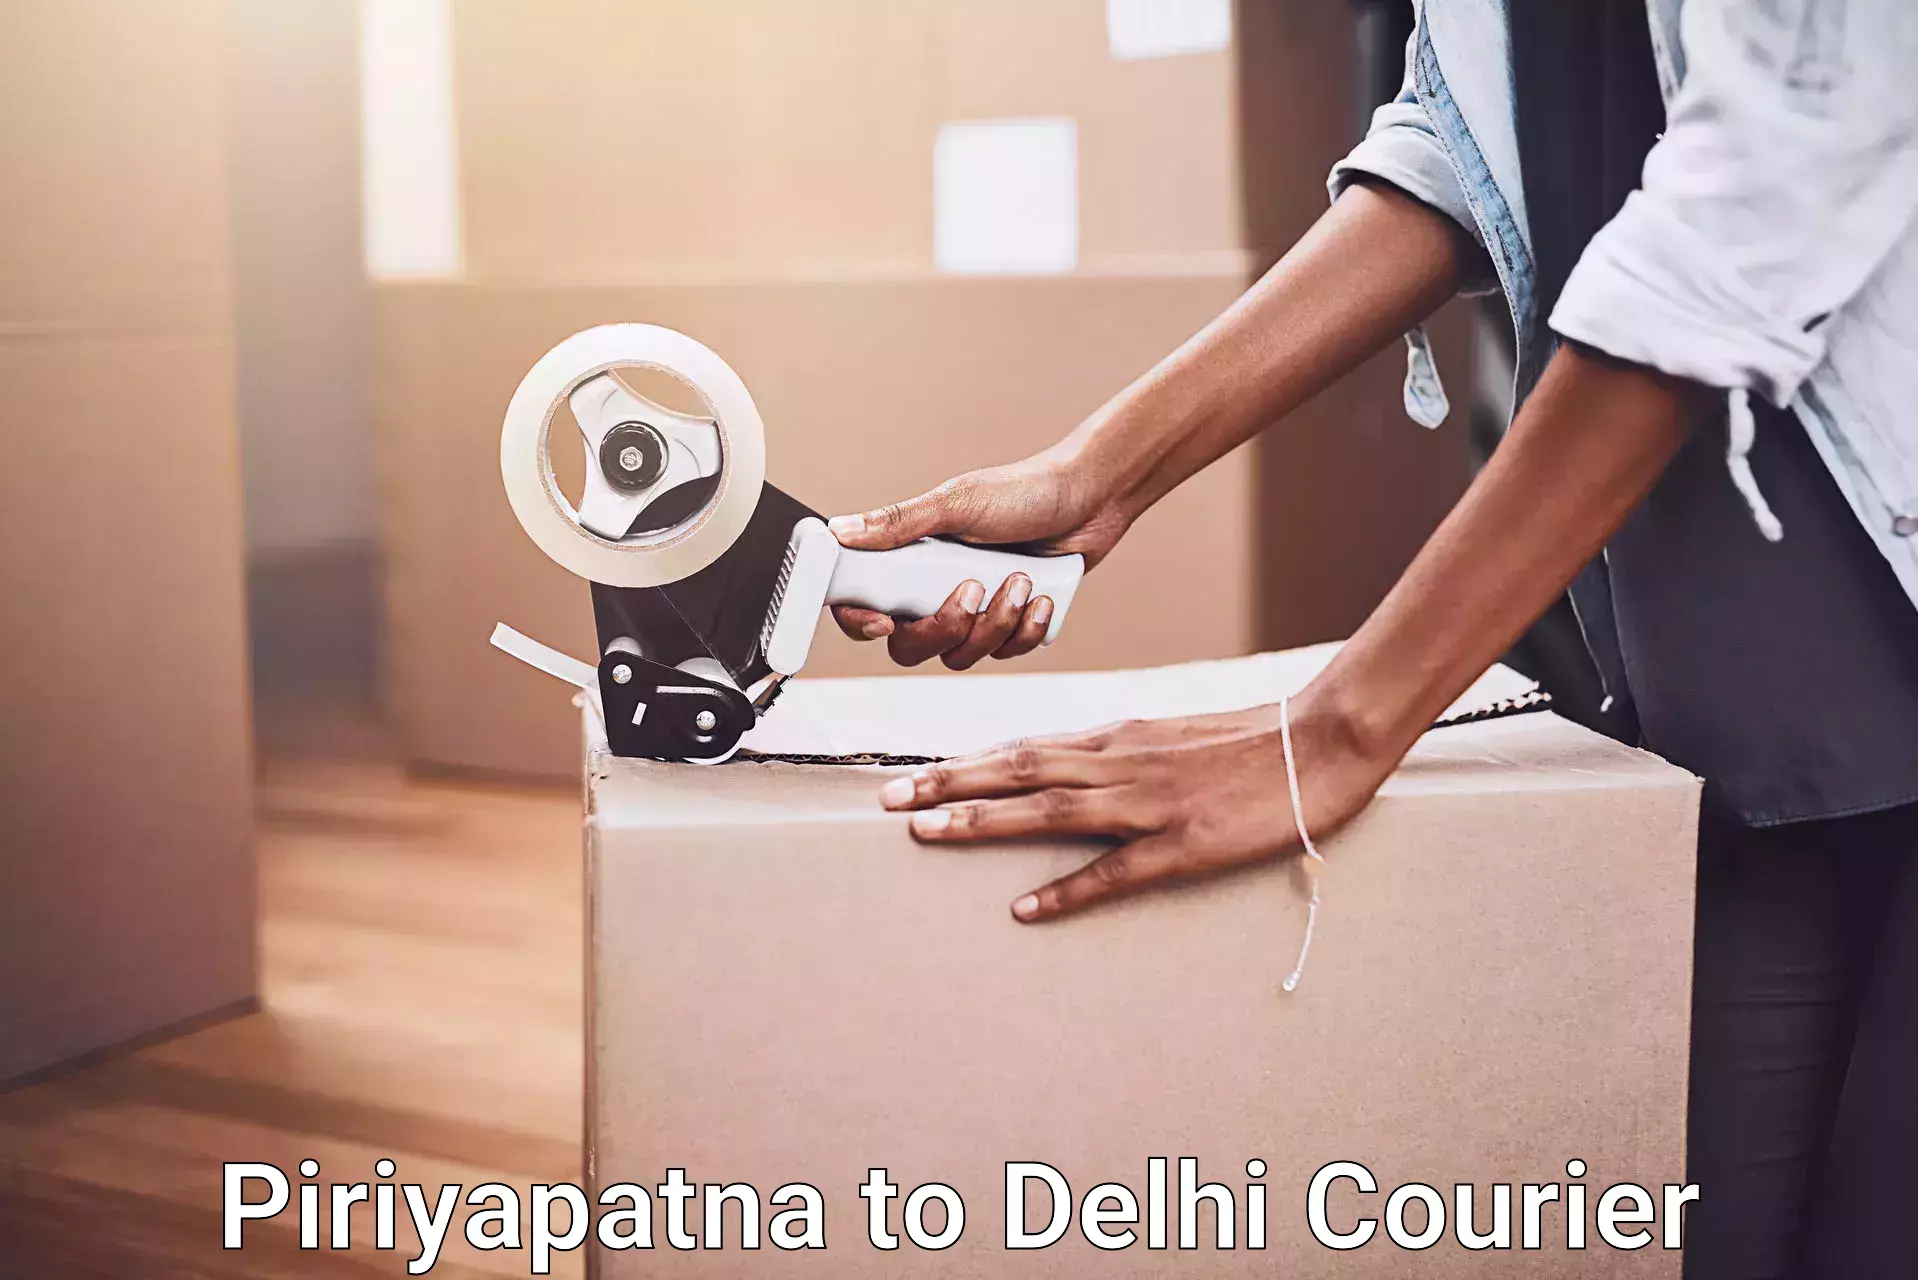 Full-service movers Piriyapatna to University of Delhi